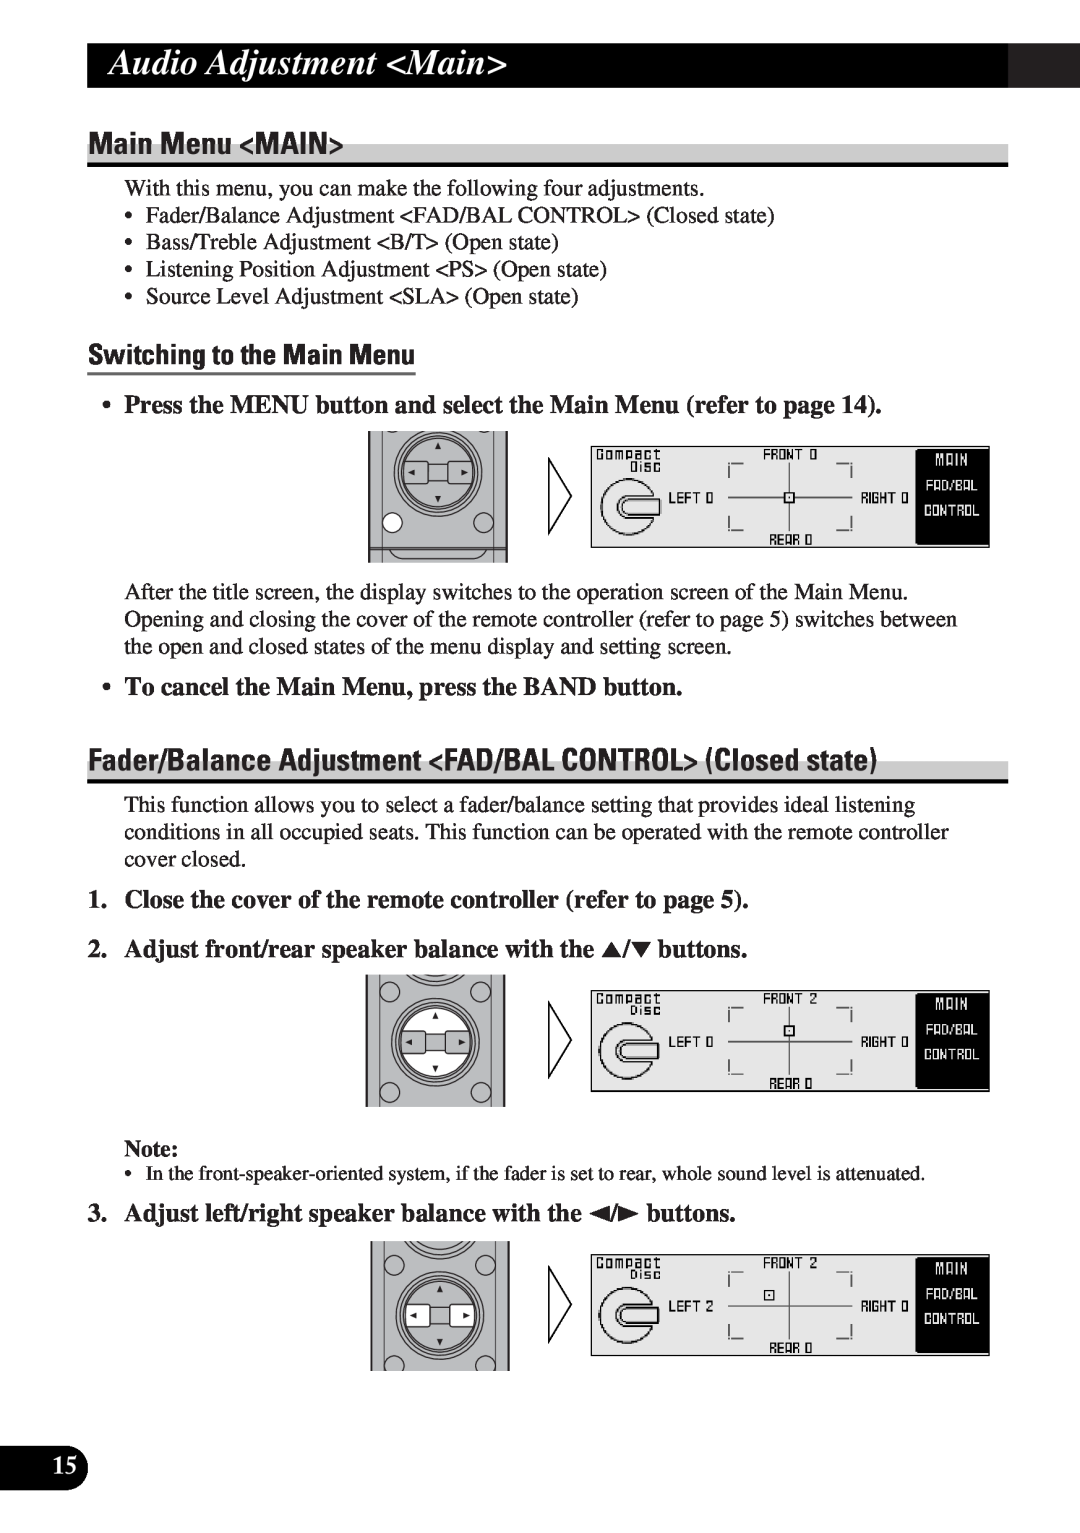 Pioneer DEQ-P9 owner manual Audio Adjustment Main, Main Menu MAIN, Switching to the Main Menu 